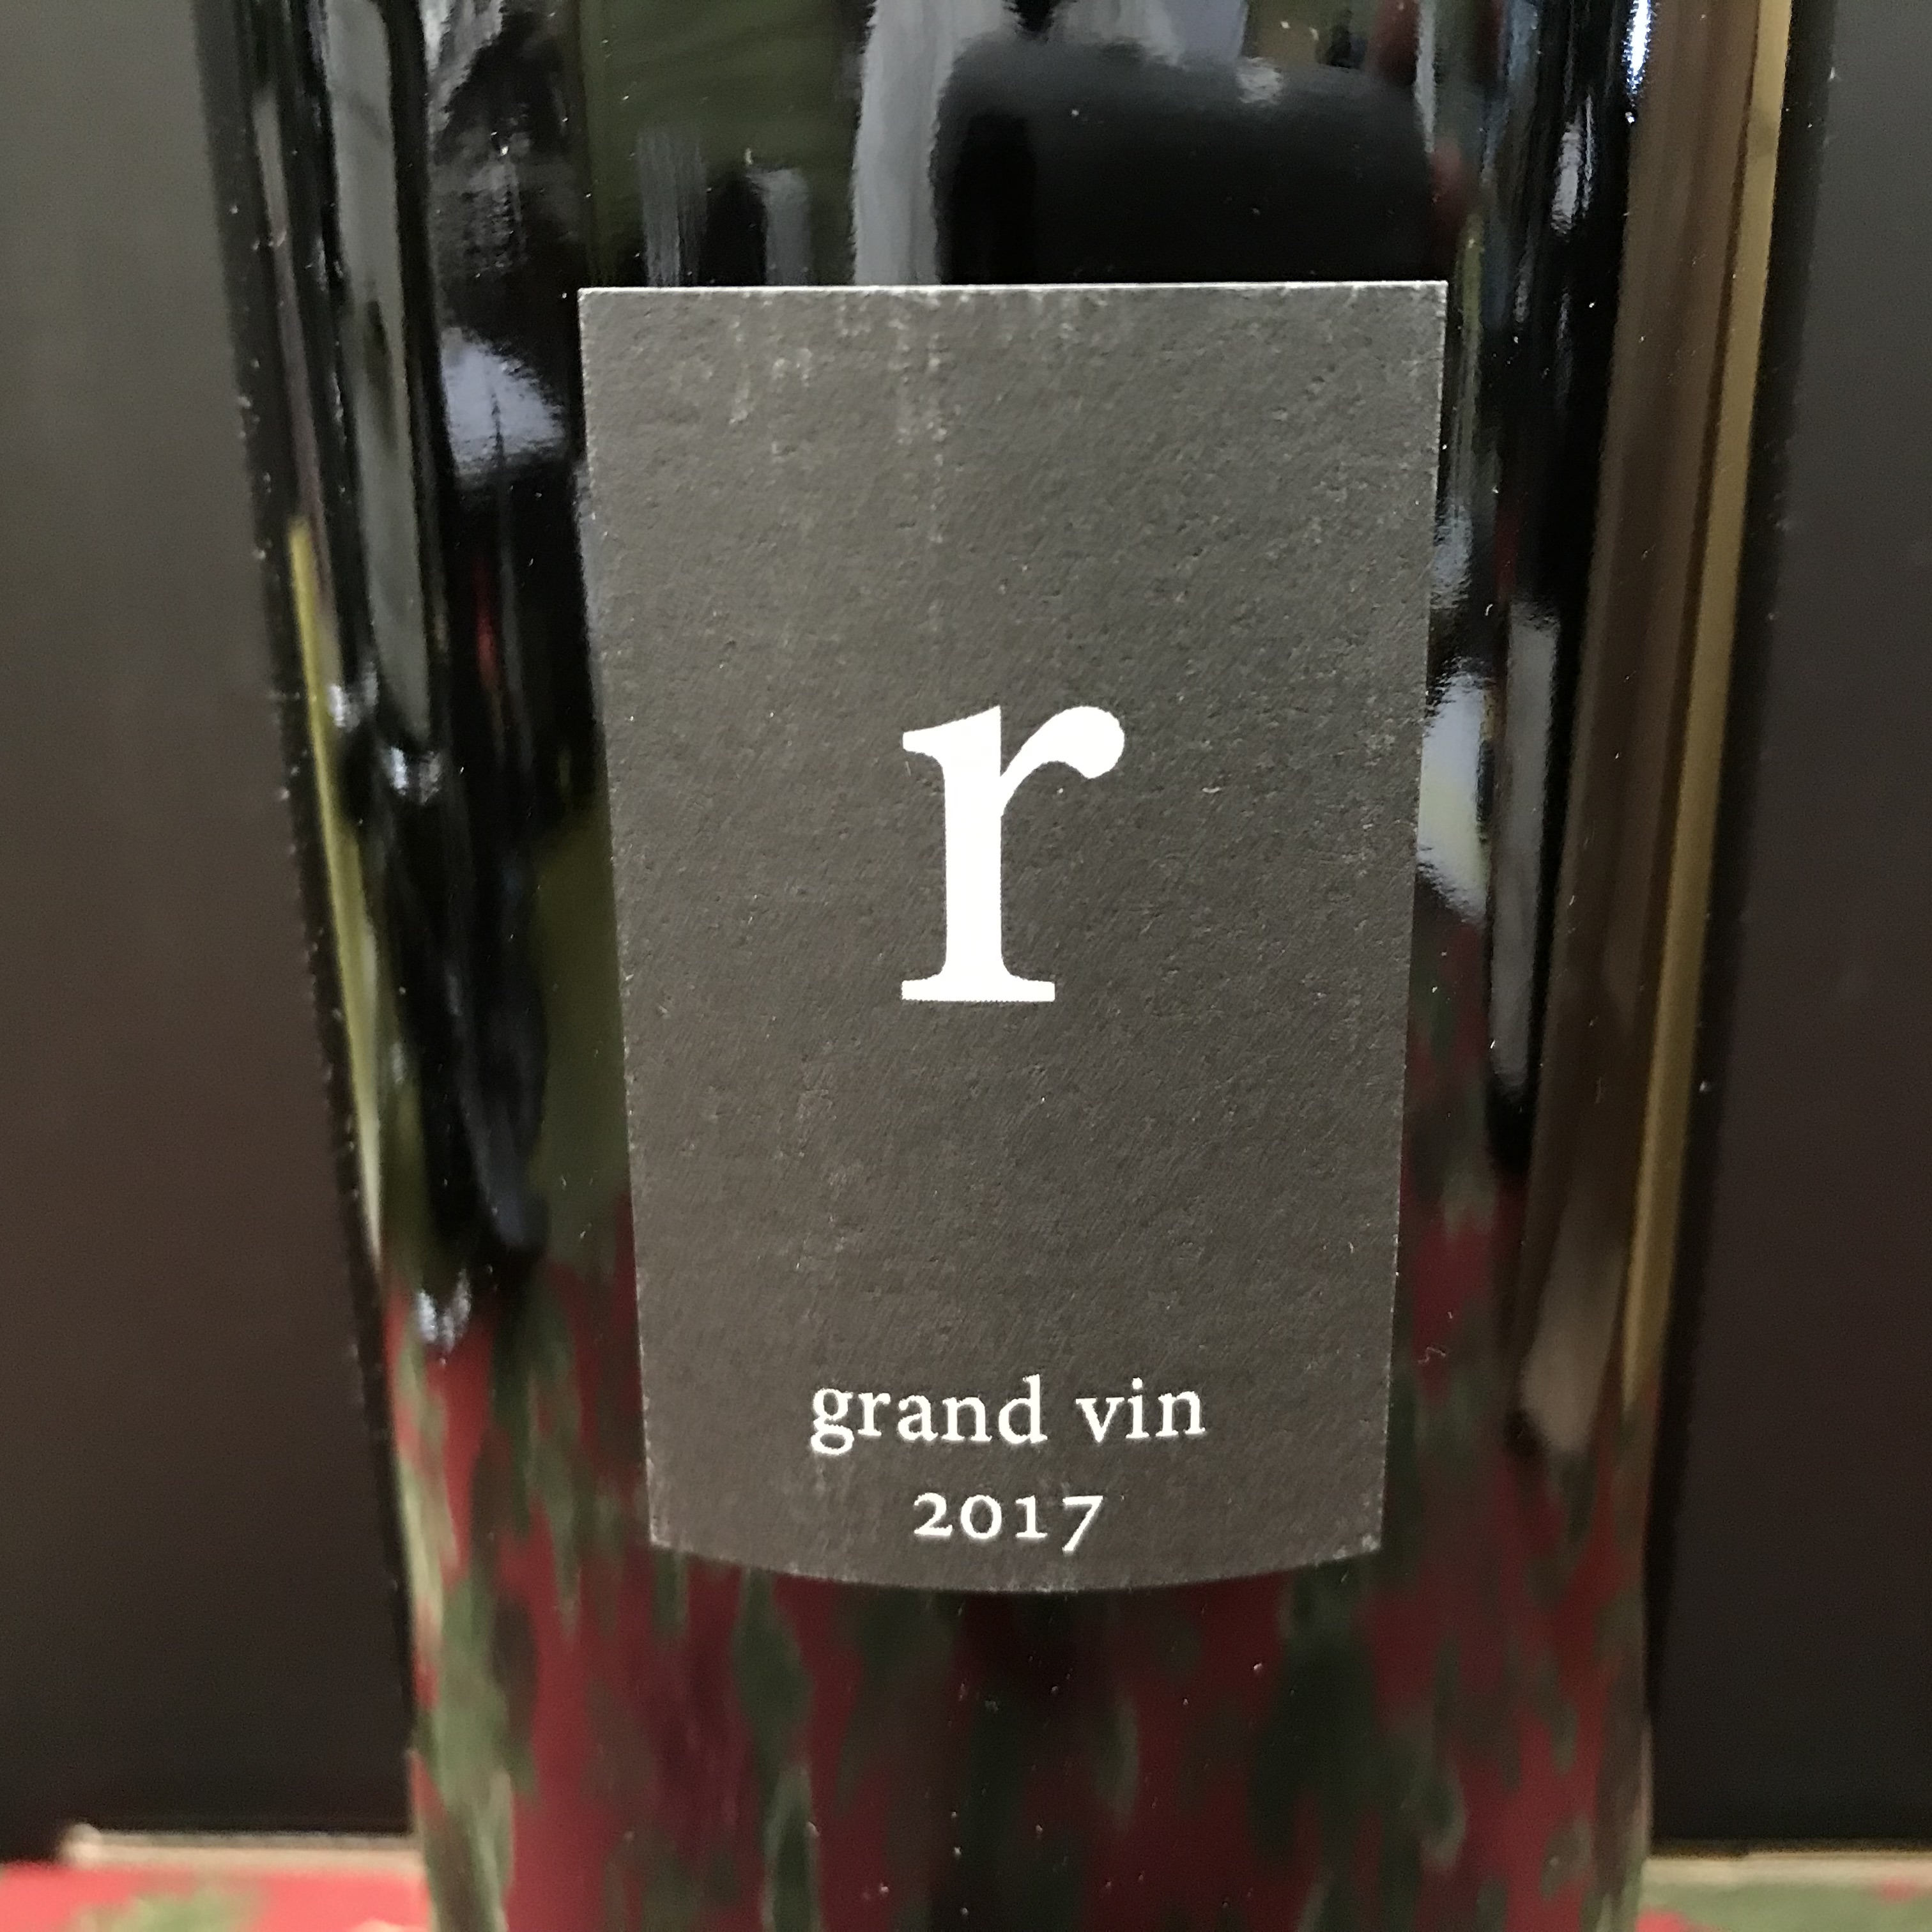 Lovingston Vineyards "R" Grand Vin Monticello 2017